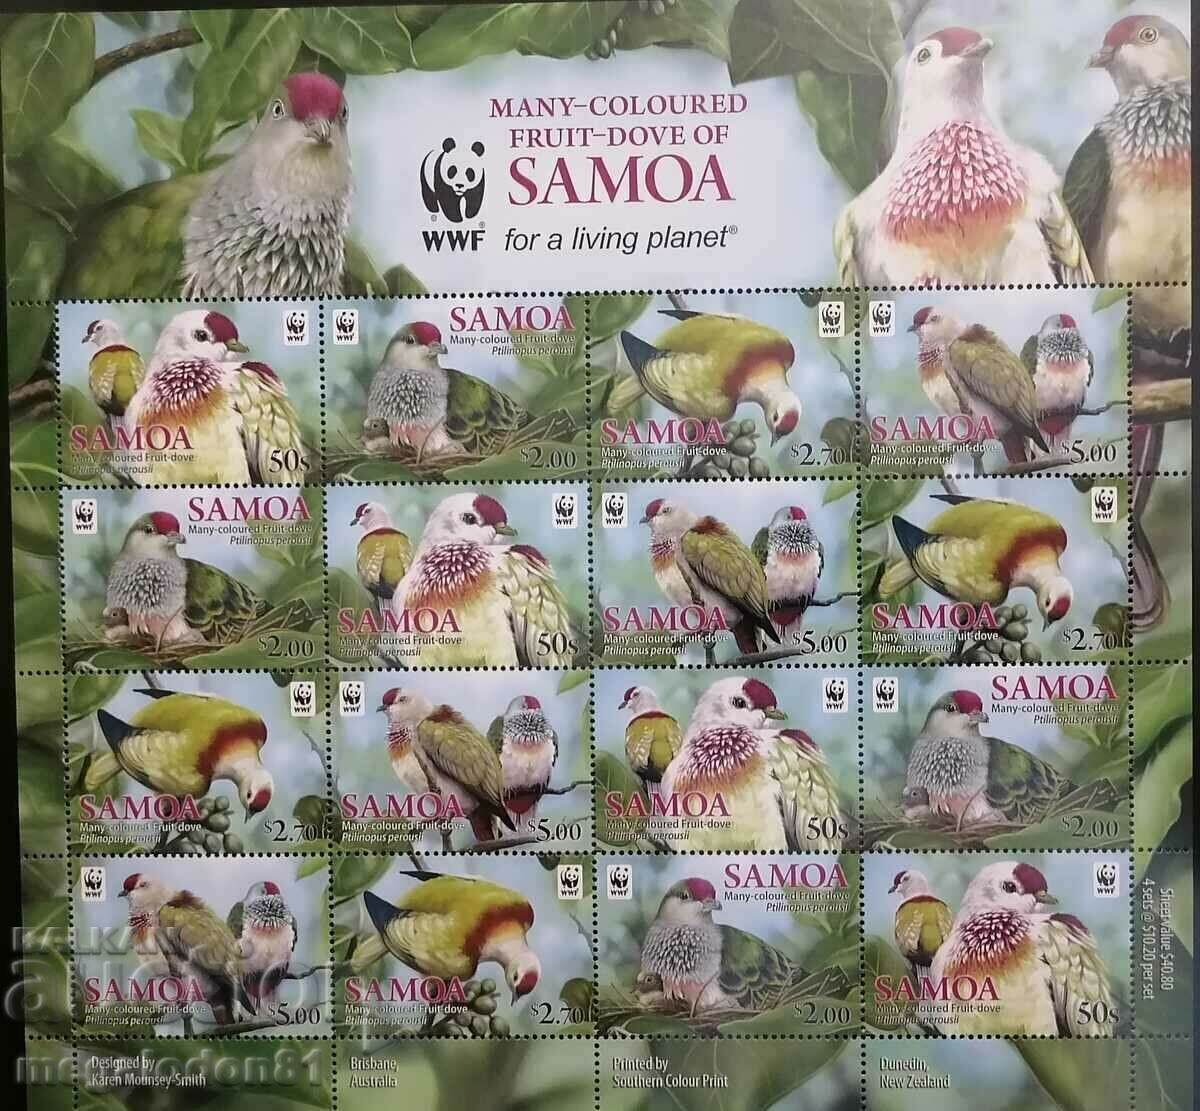 Samoa - WWF, Samoan pigeon